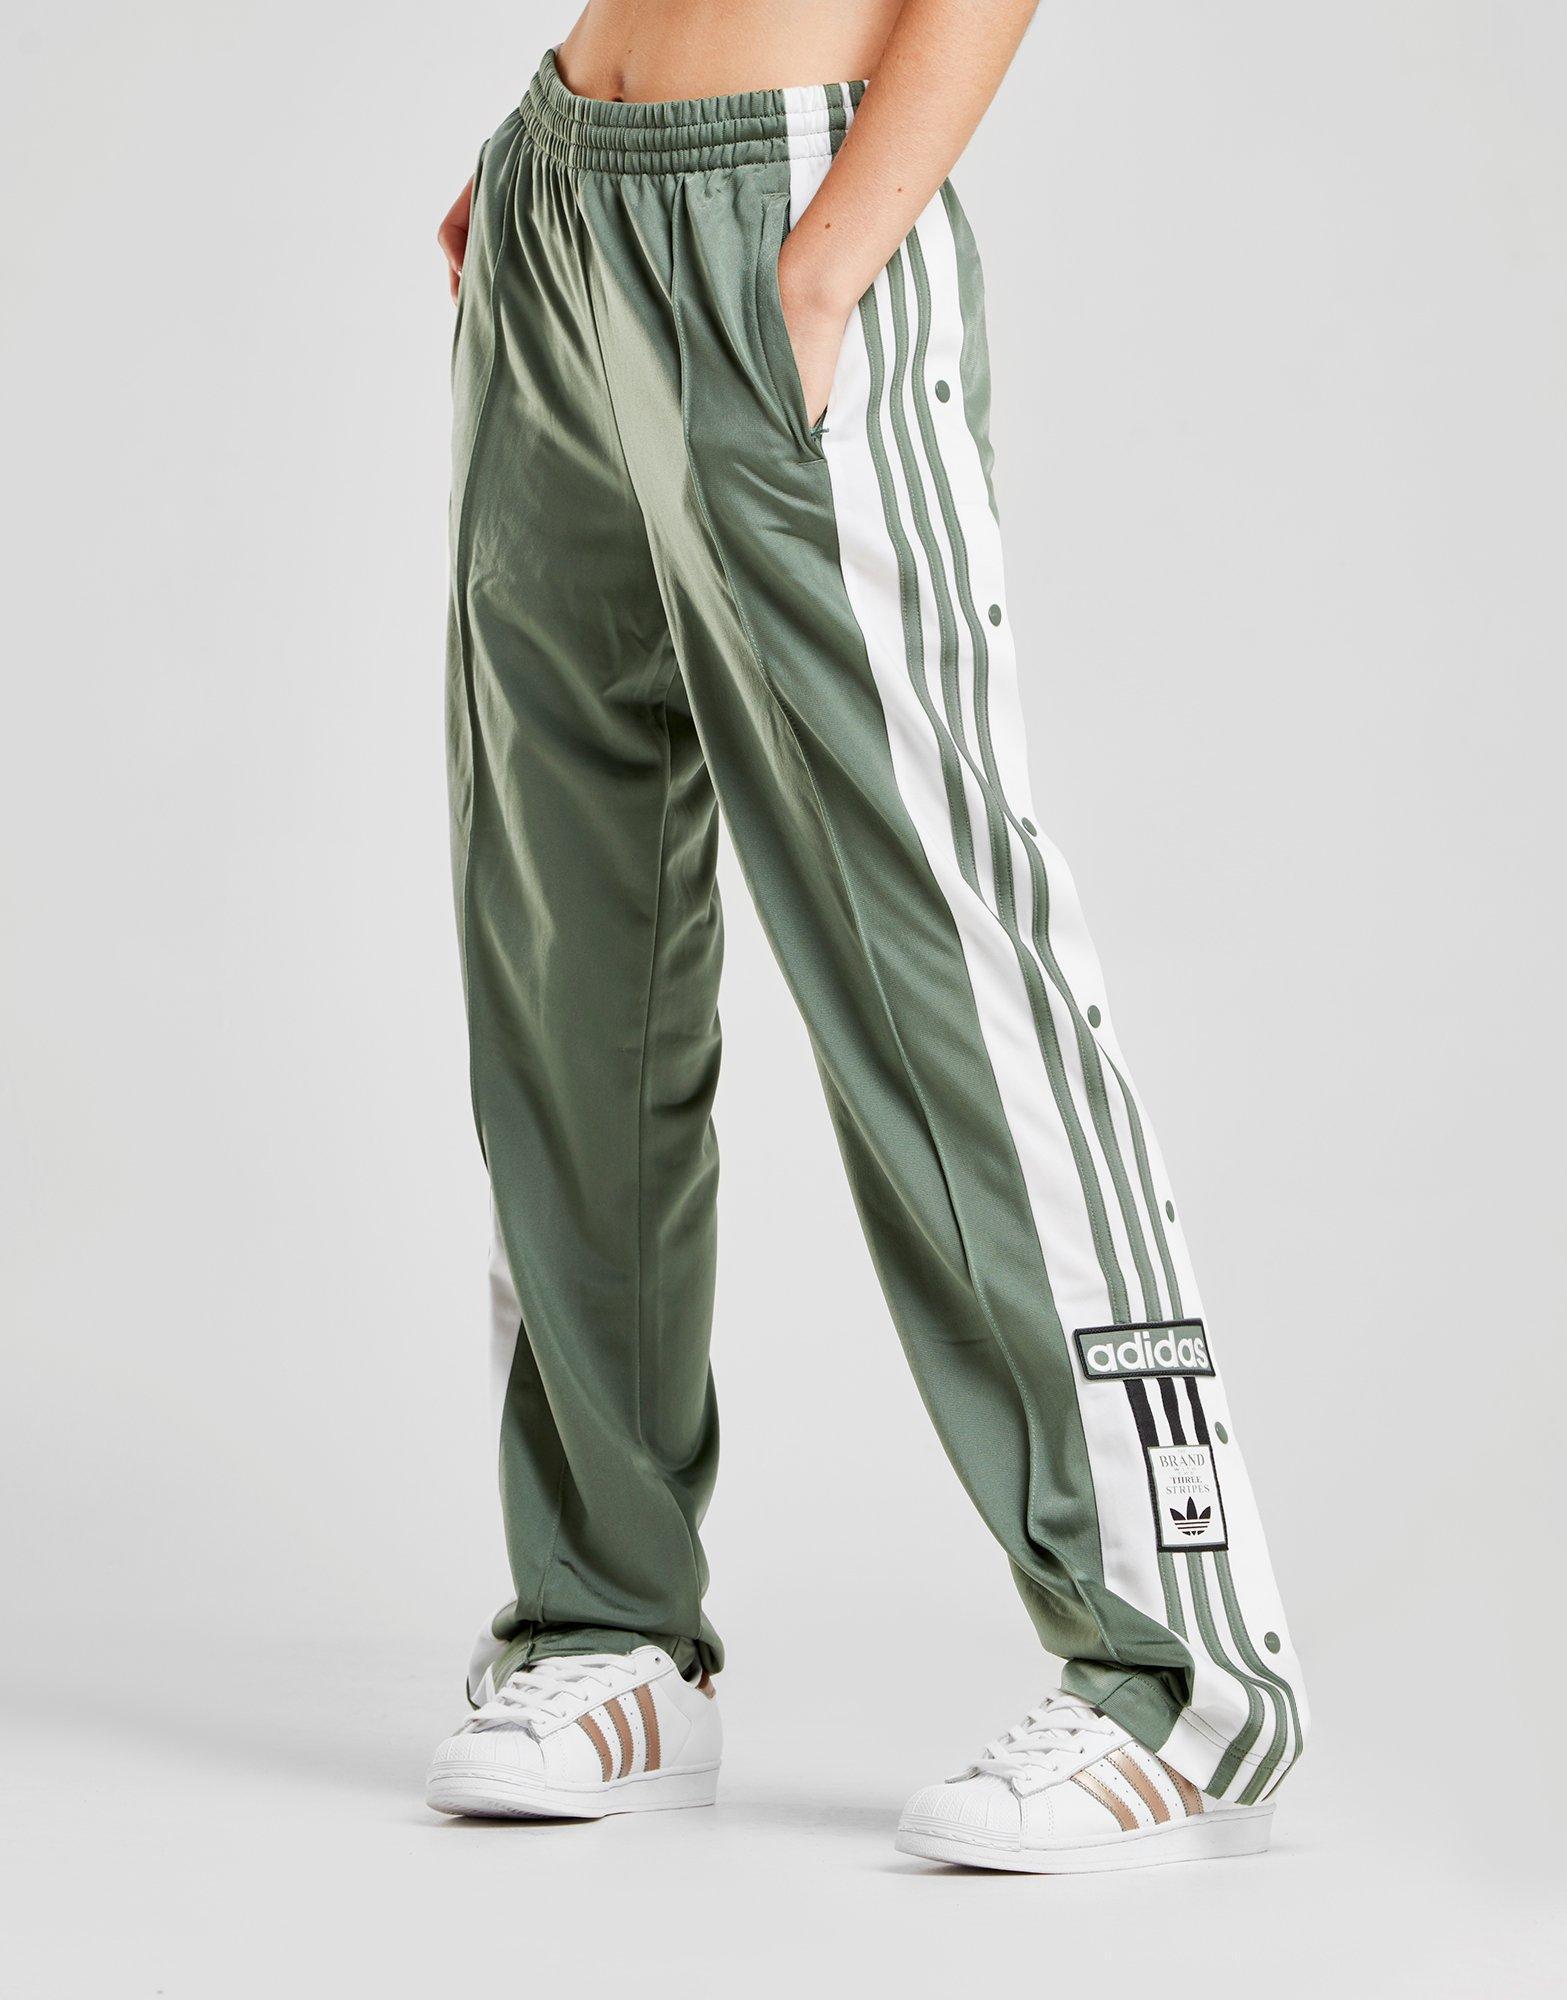 kelly green adidas track pants